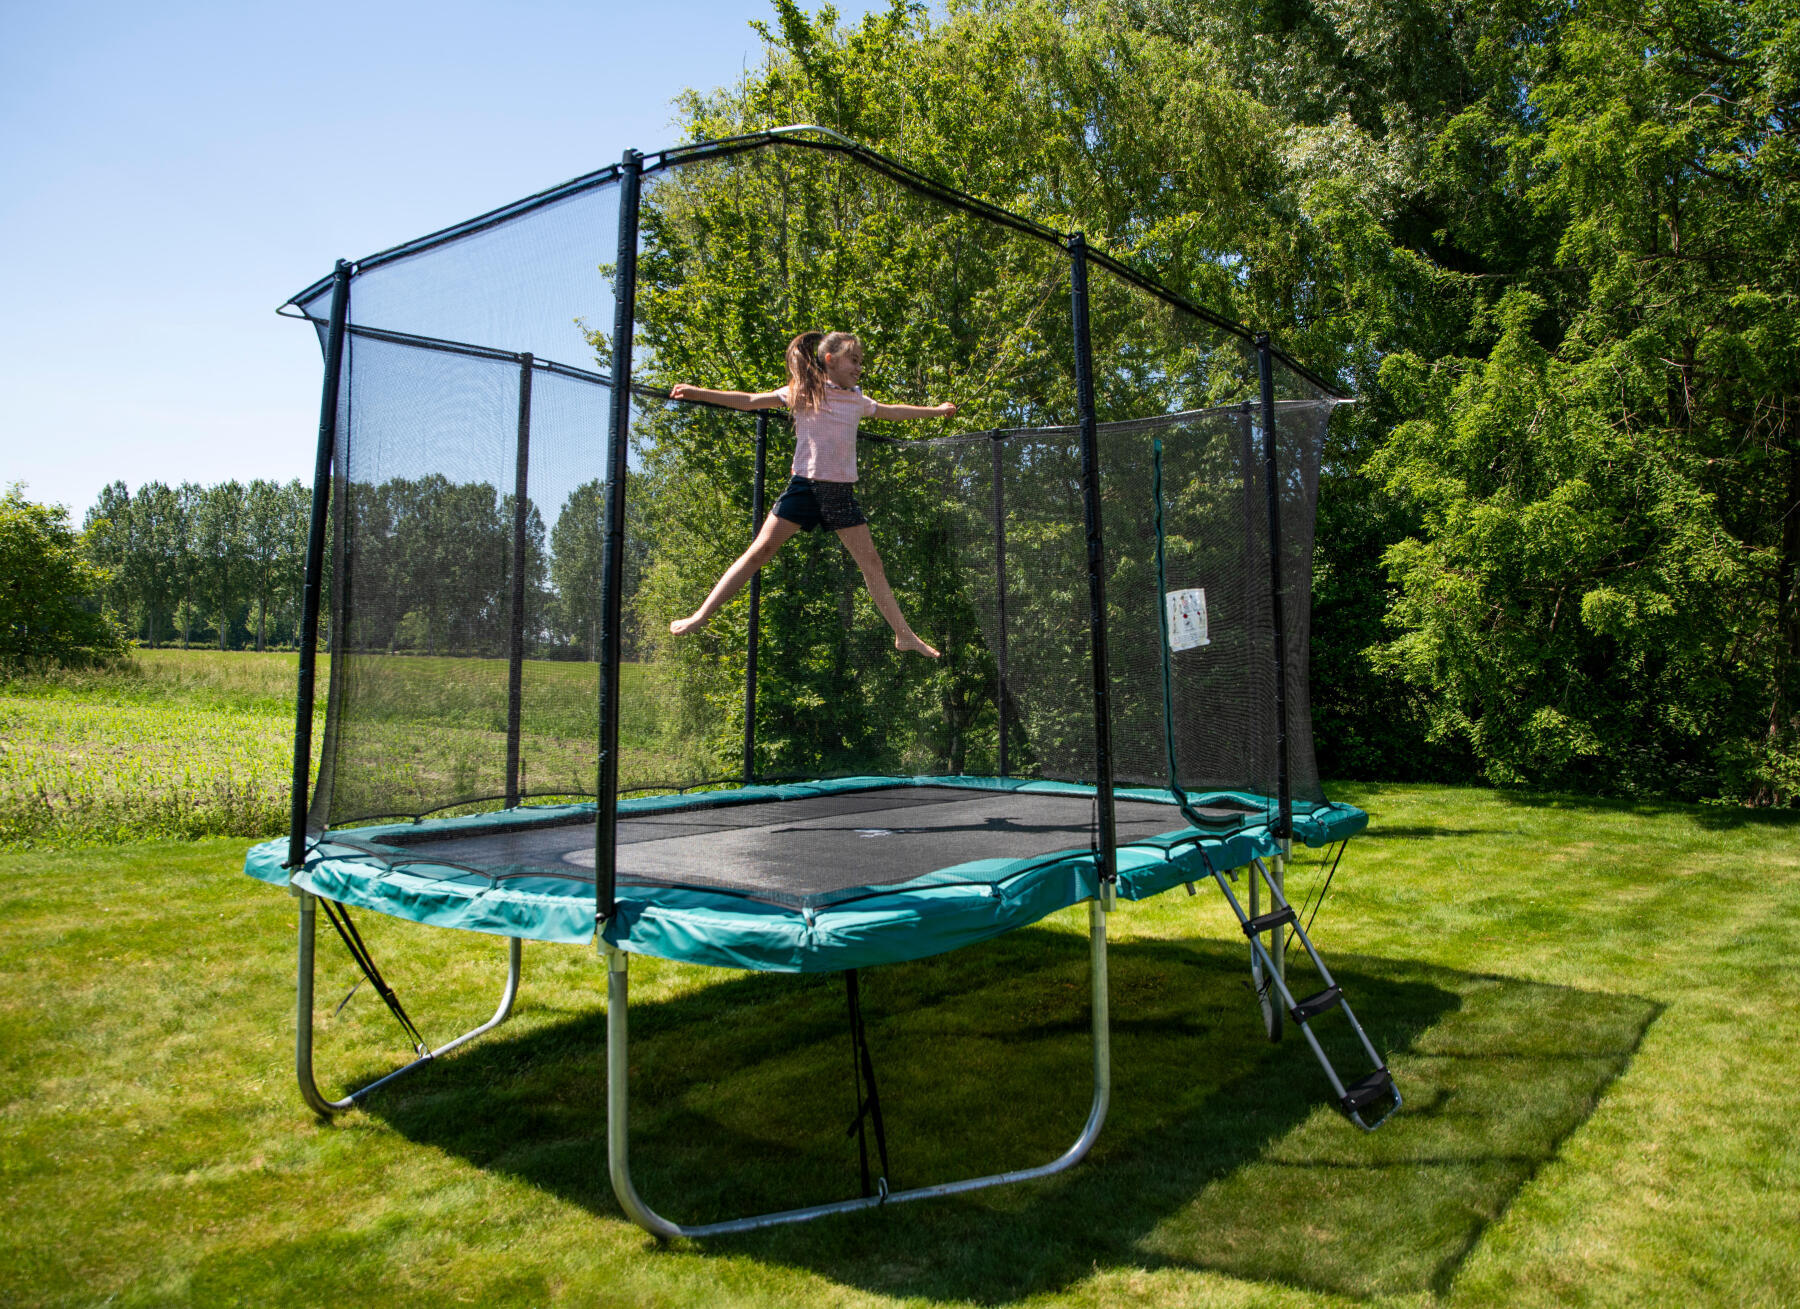 Comment faire pour sécuriser un trampoline ? 